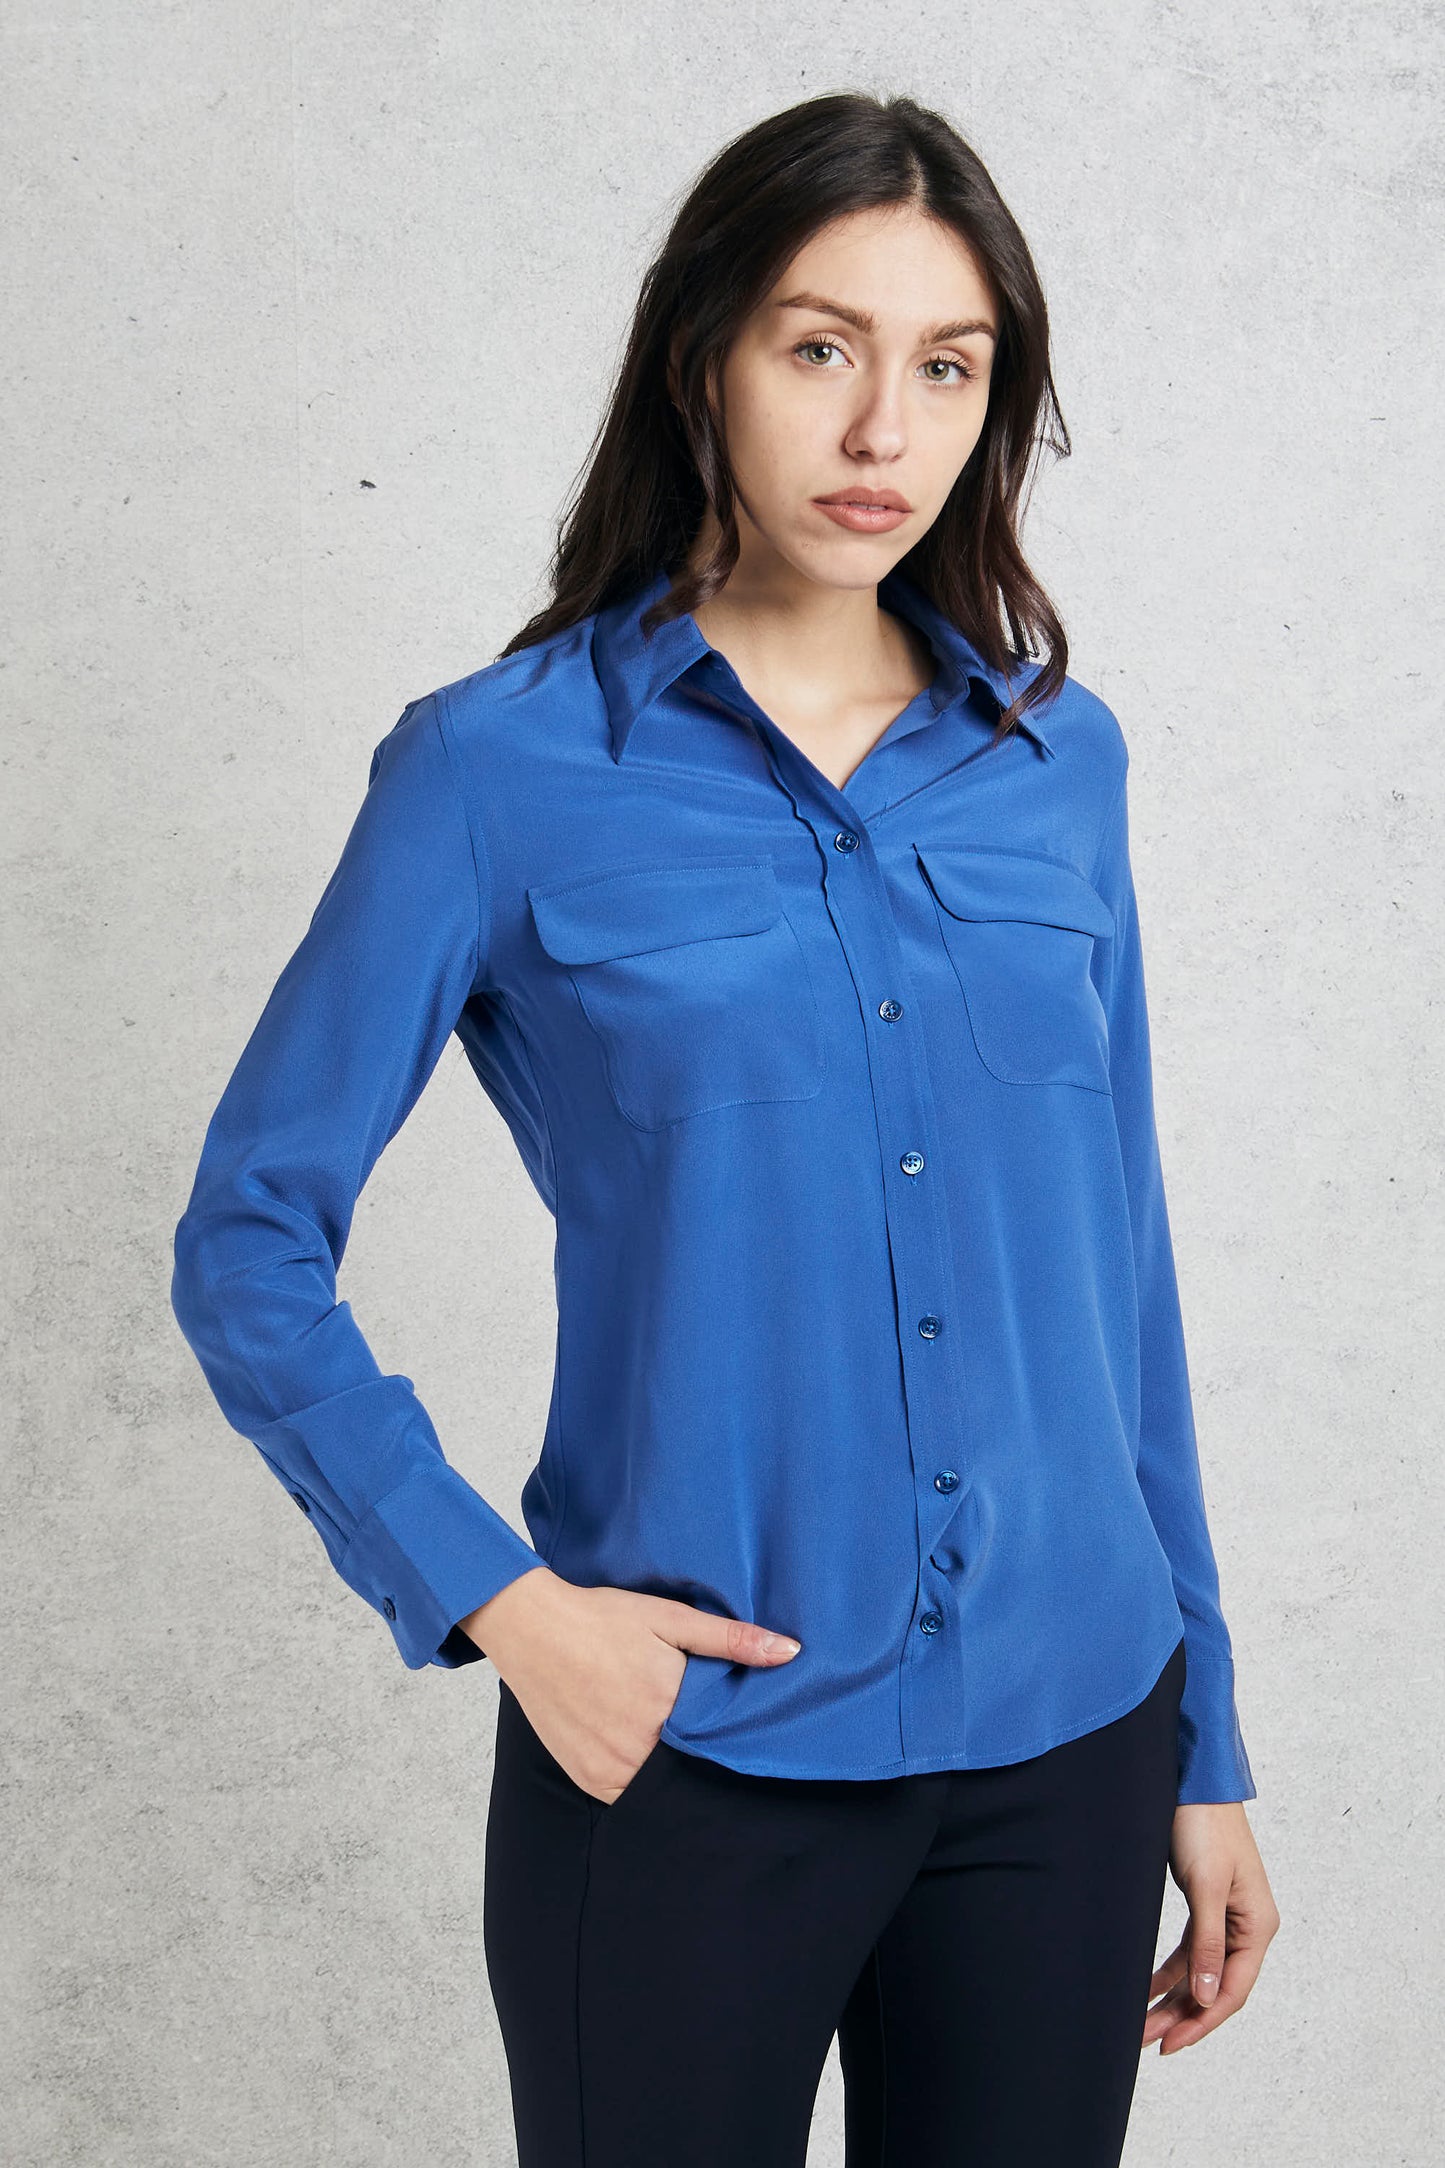  Equipment Femme Blue Silk Shirt For Women Blu Donna - 3